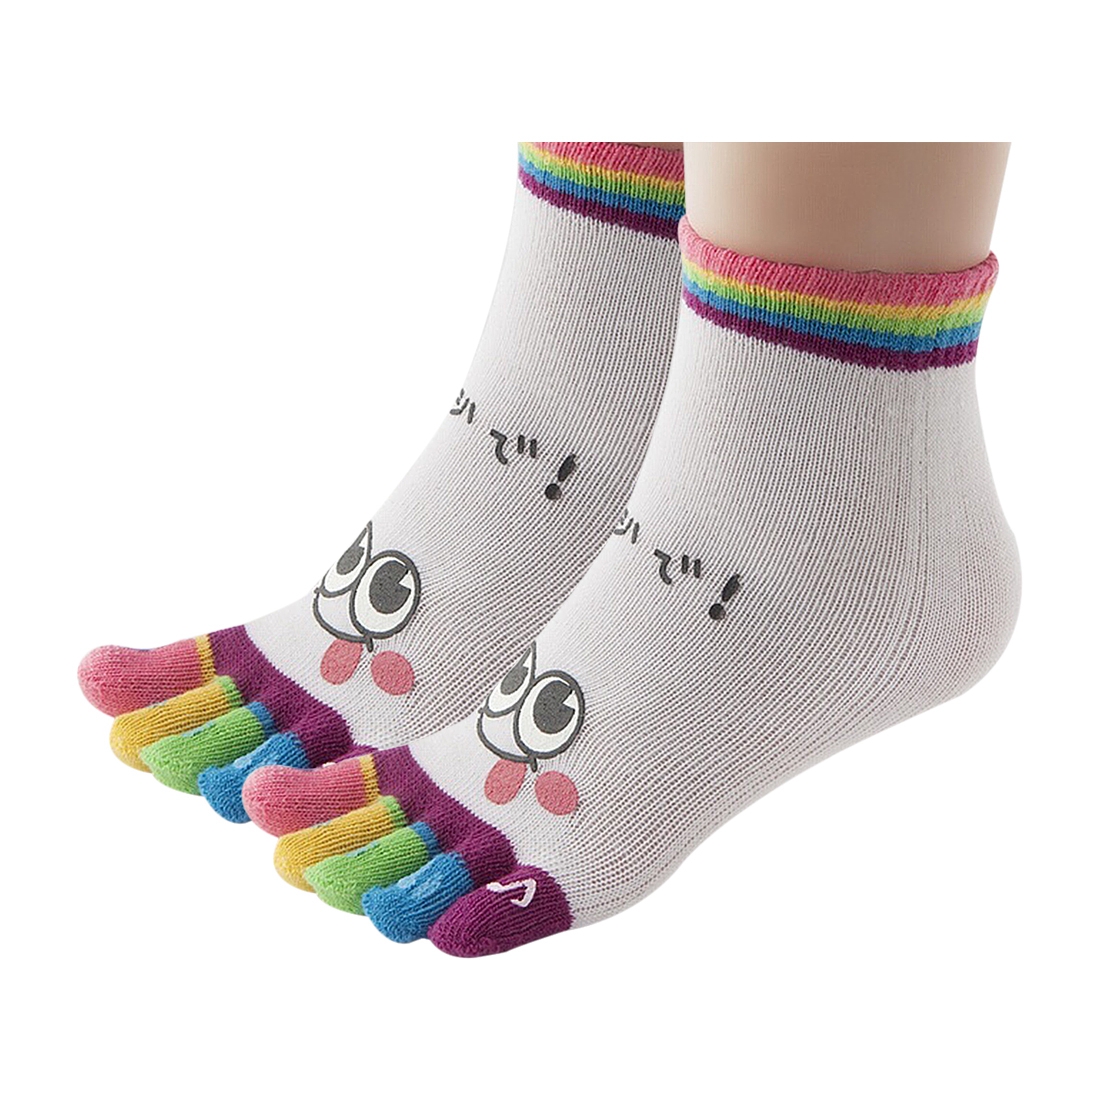 5 toe socks 2